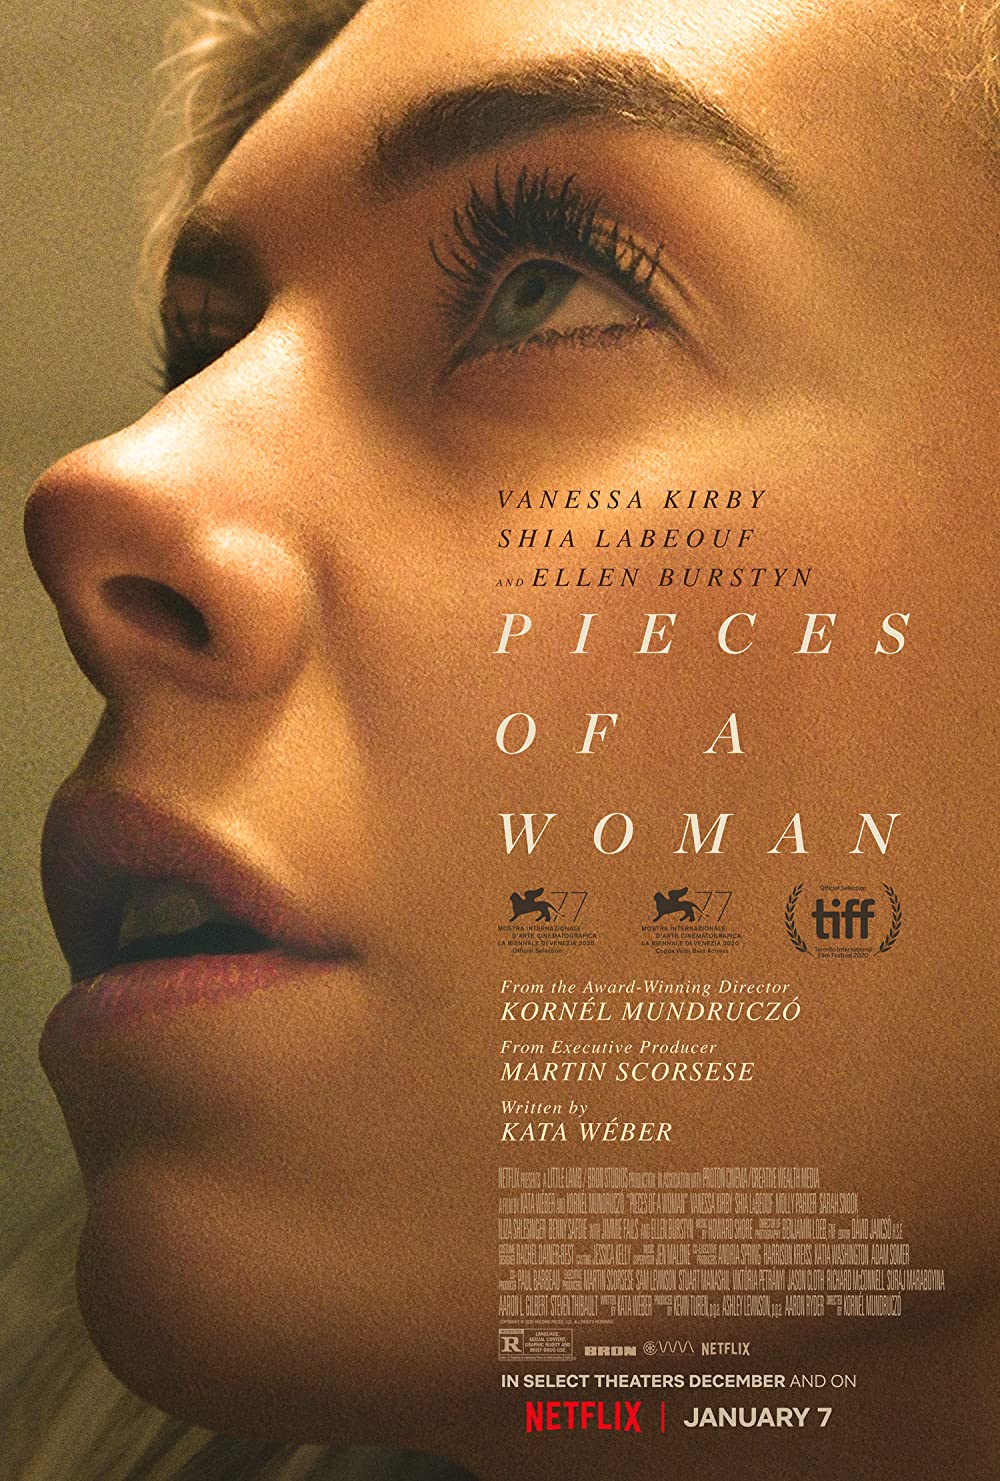 Filmbeschreibung zu Pieces of a Woman